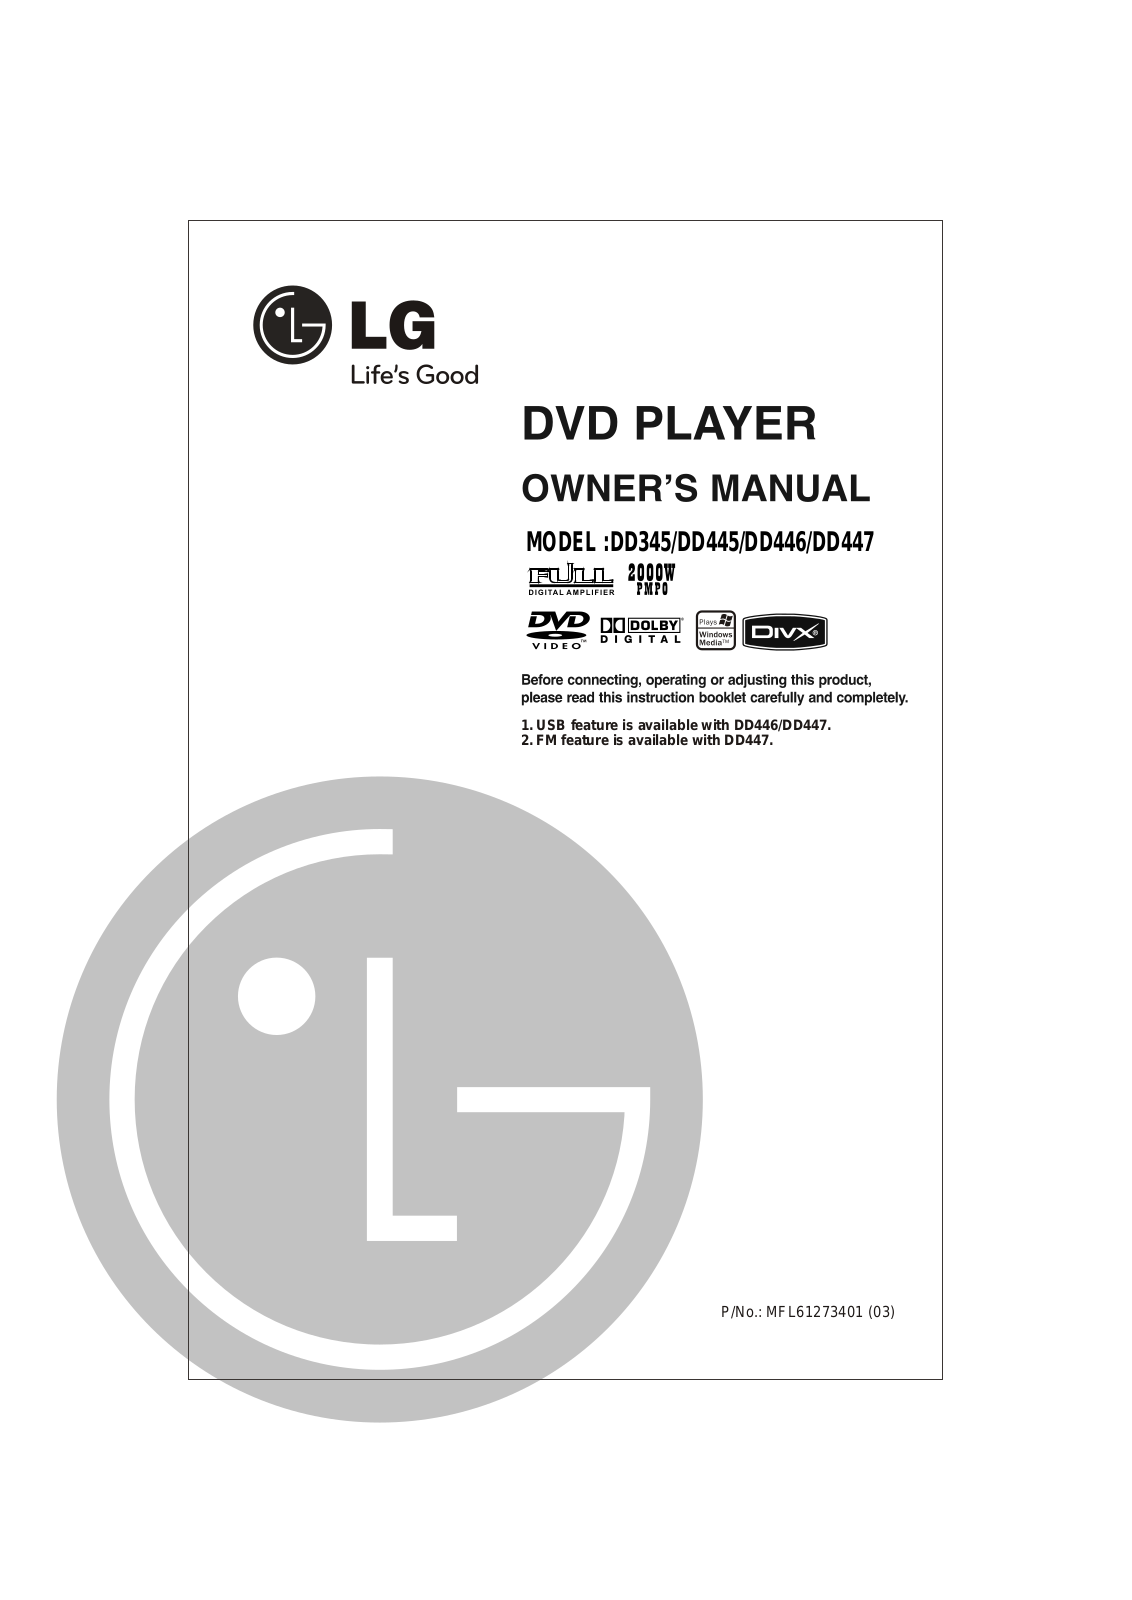 LG DD447-P, DD345-P, DD446-P Owner’s Manual